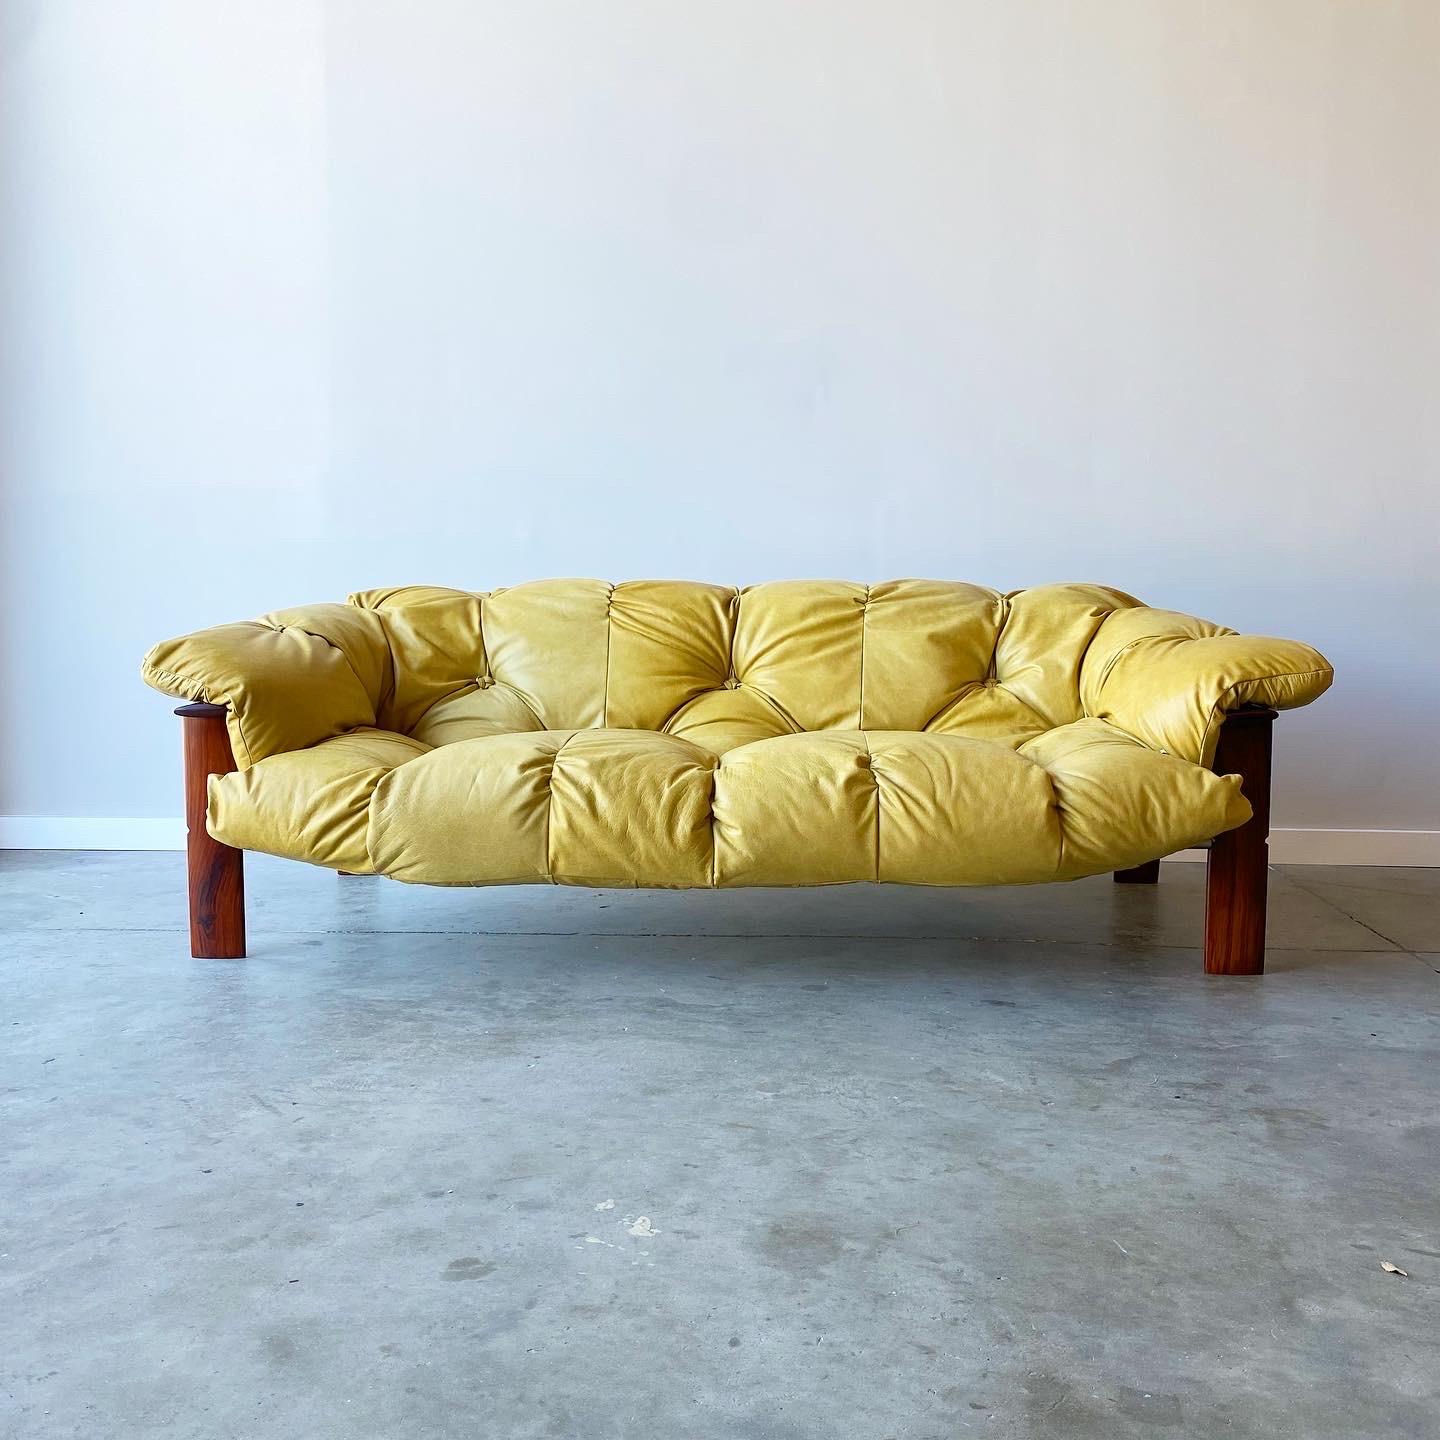 Ein atemberaubendes und seltenes Beispiel, entworfen von Percival Lafer.  Dieses Sofa und die Ottomane wurden vollständig restauriert, mit neuem Leder bezogen und mit einem neuen Jacaranda-Rahmen versehen.  Die Lederriemen sind in gutem